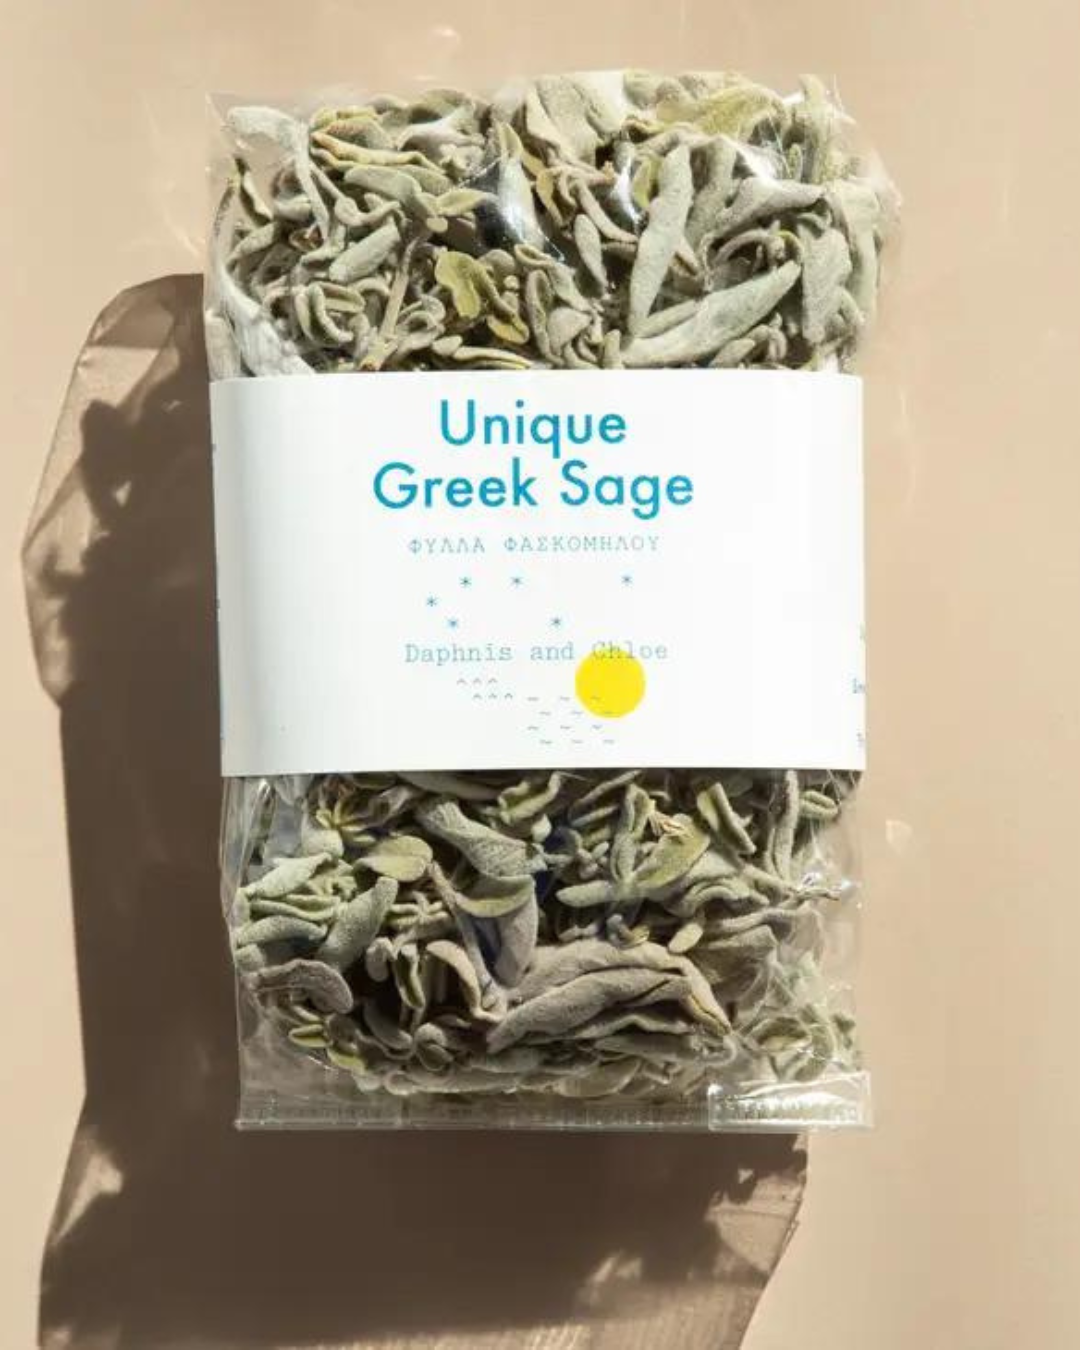 Handpicked Greek Sage Tea, 36g